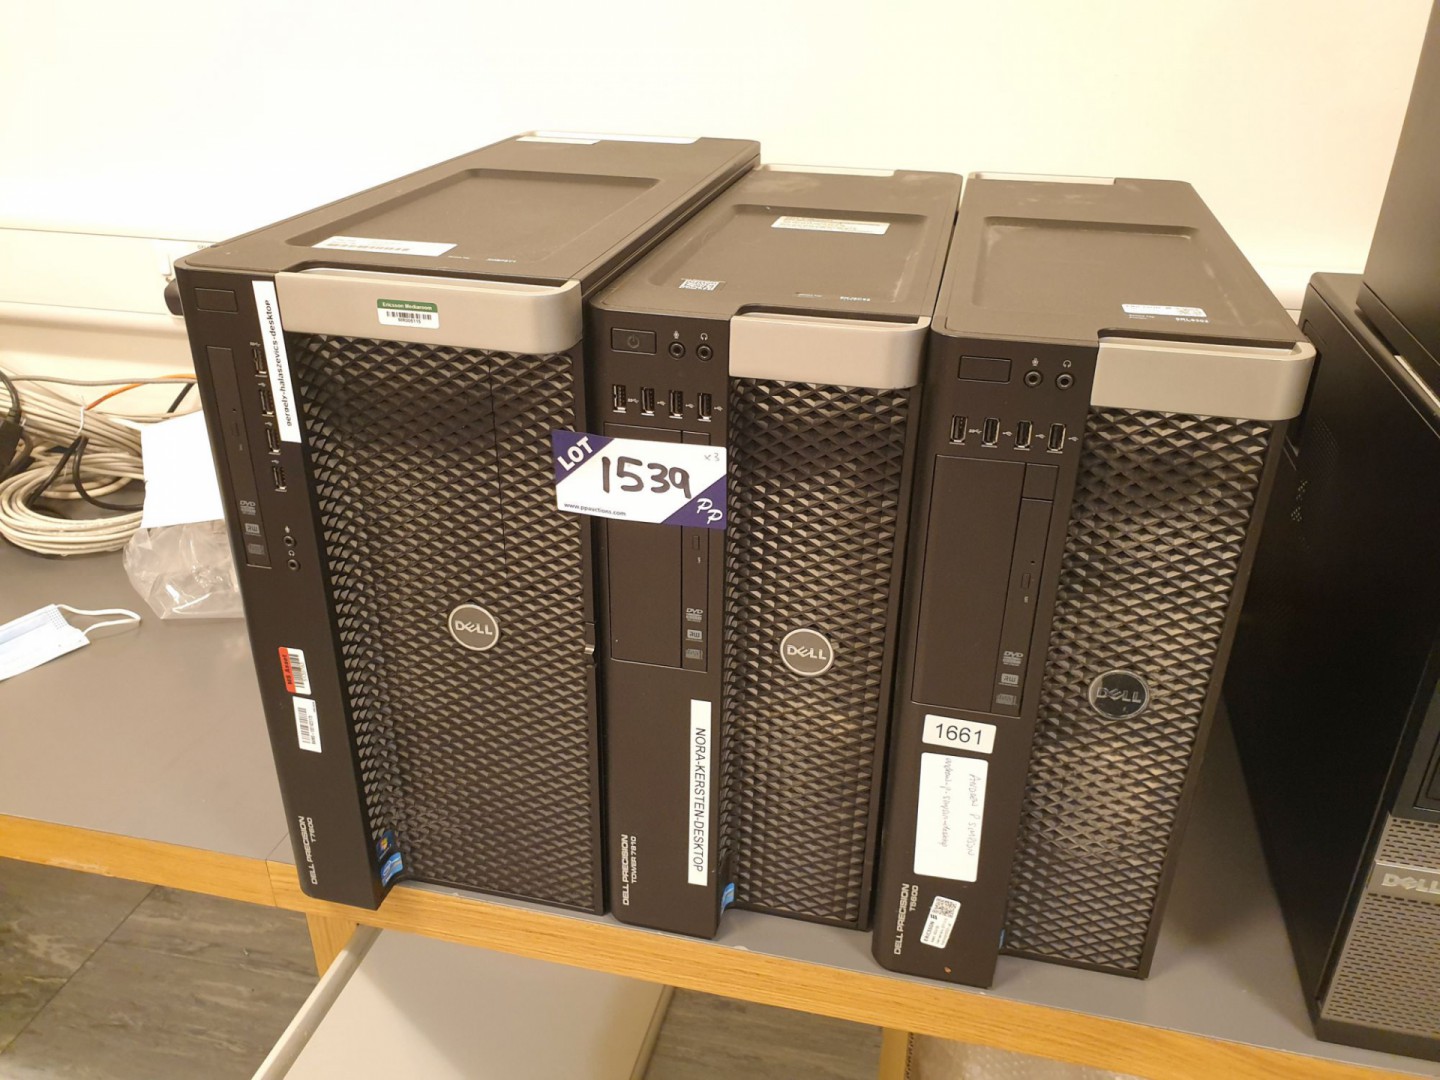 Dell precision T7600, T7810, T5600 PC base units